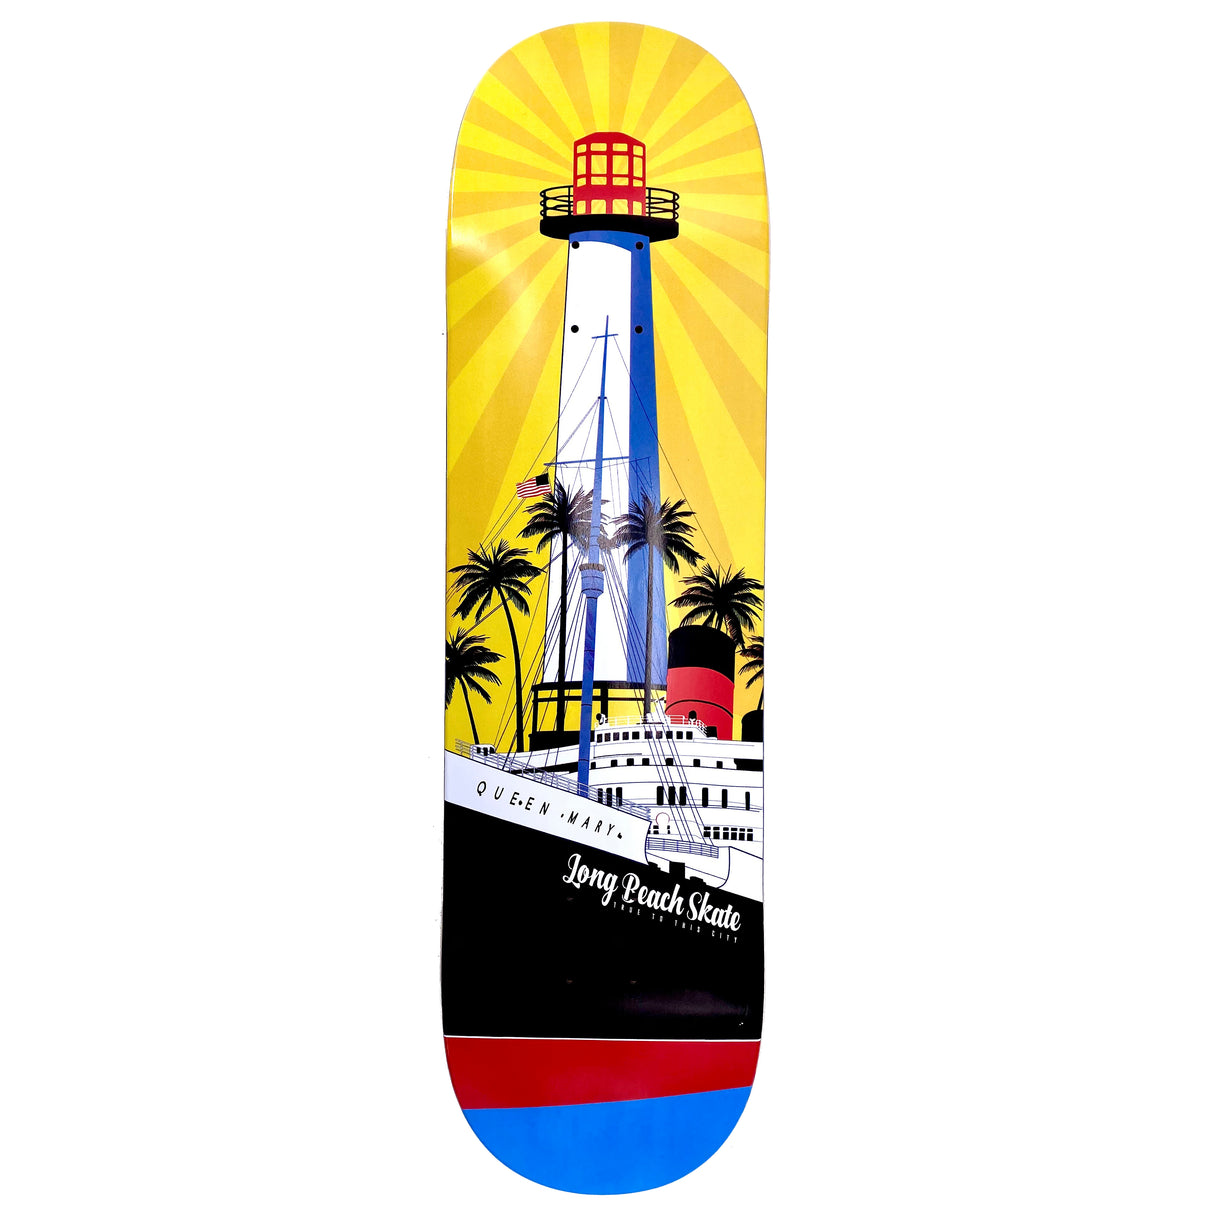 Long Beach Skate Co. "Rising Sun on Light Mary" Gold Red Blue 8.62" Skateboard Deck